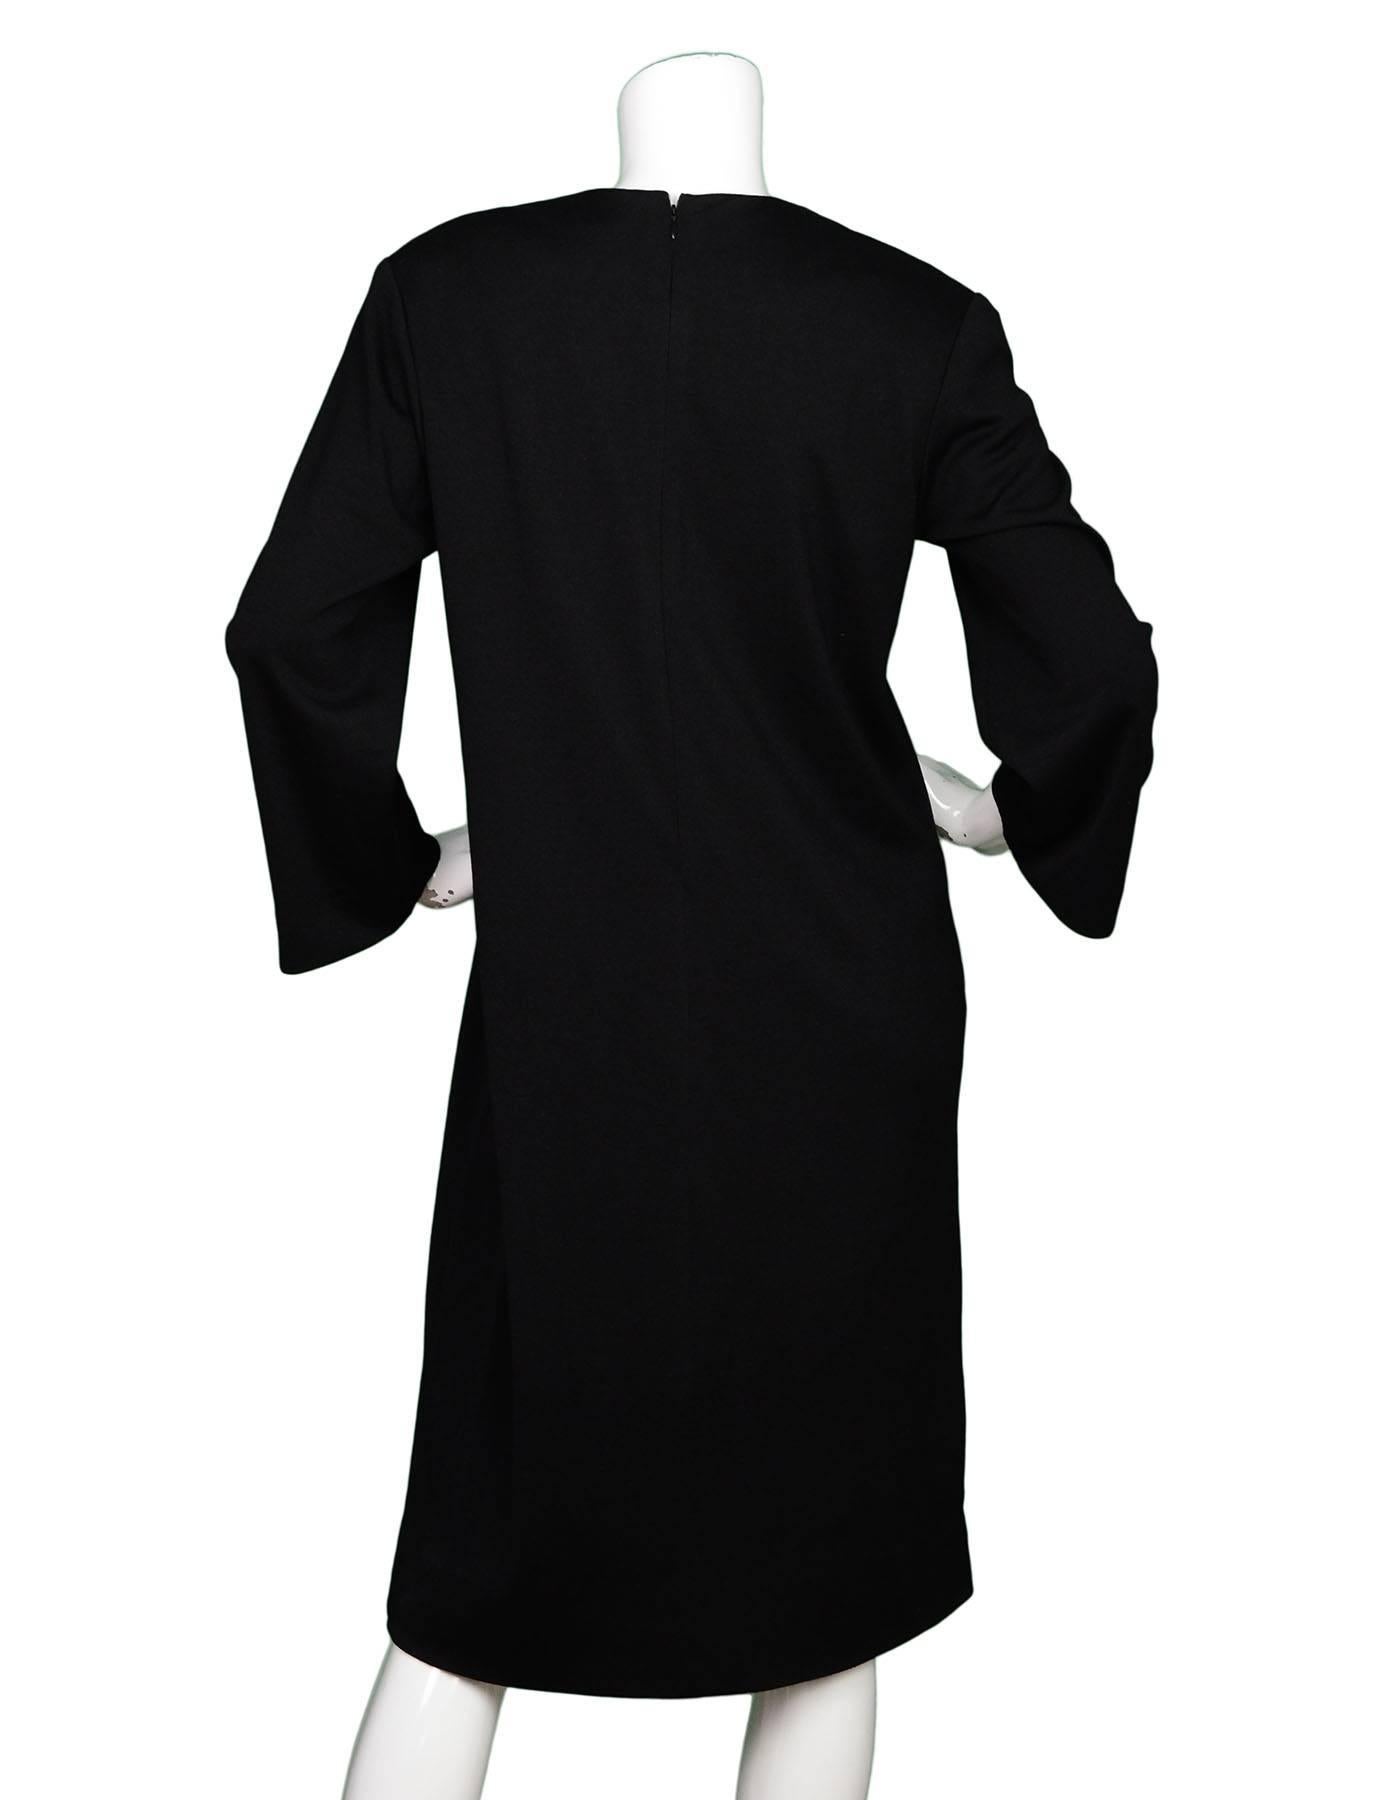 yves saint laurent black dress